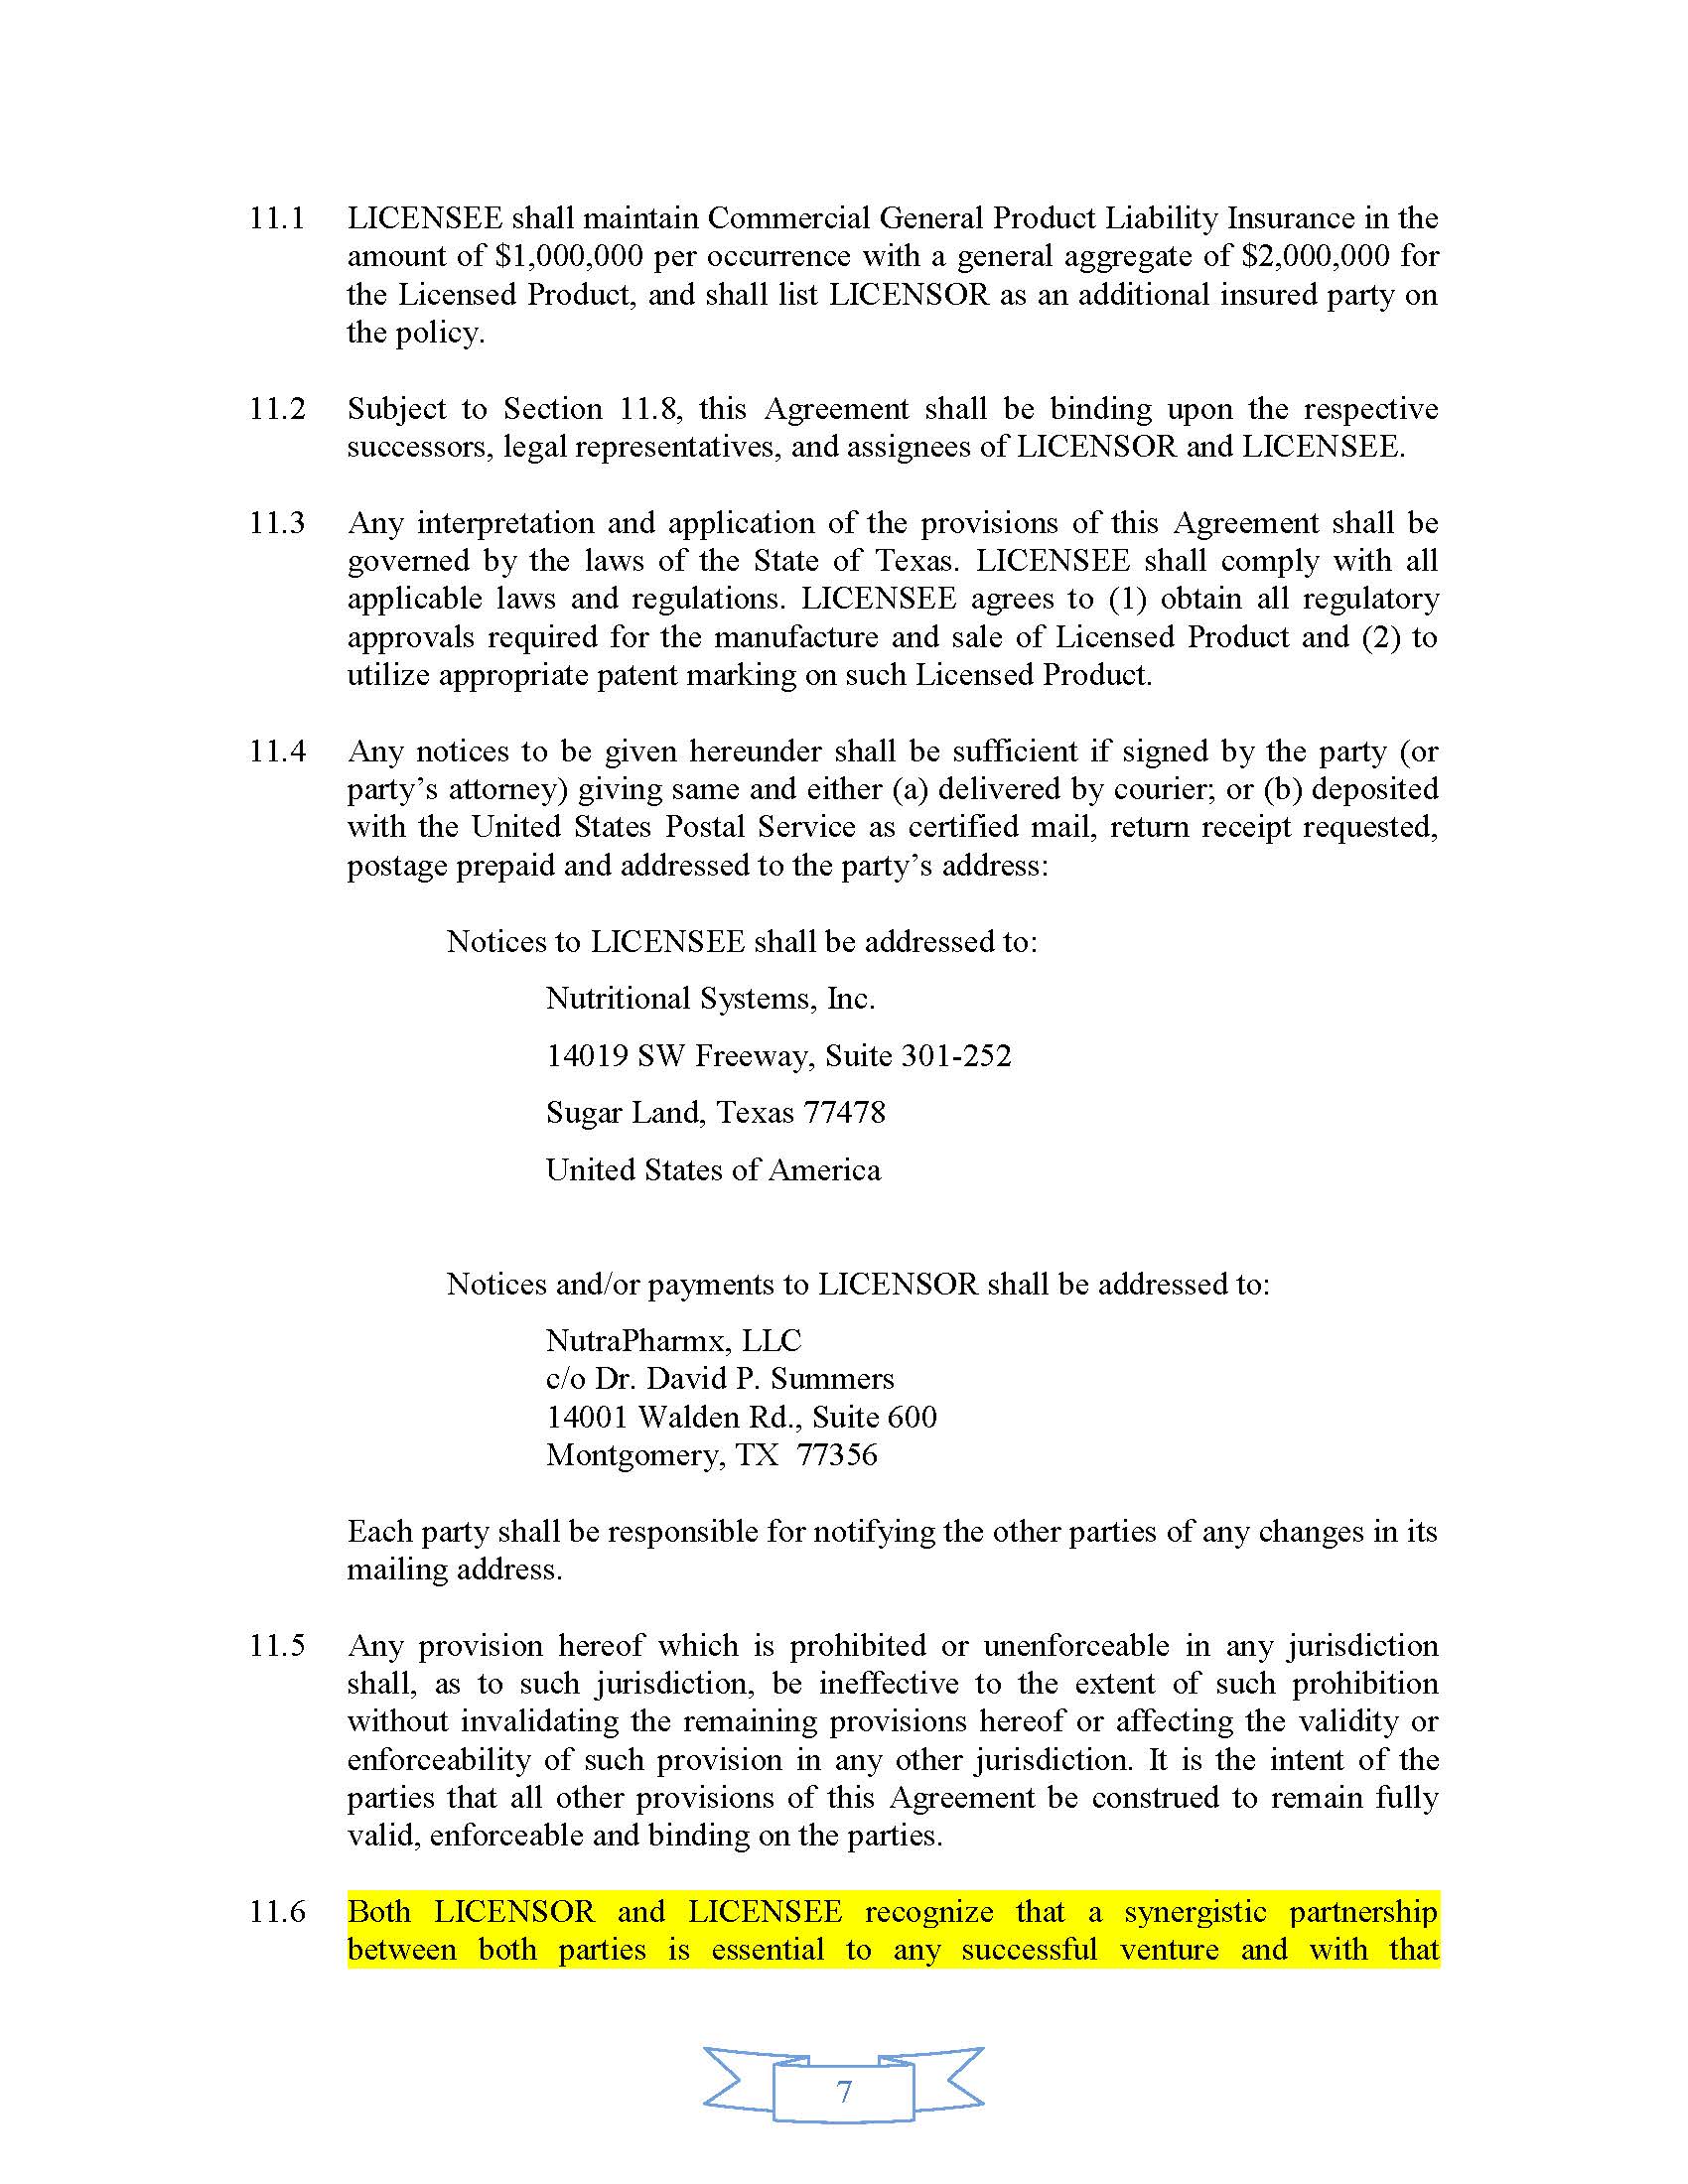 NSI - Summers NutraPharmx License Agreement v5 0-FINAL-111717 KEN_Page_7.jpg